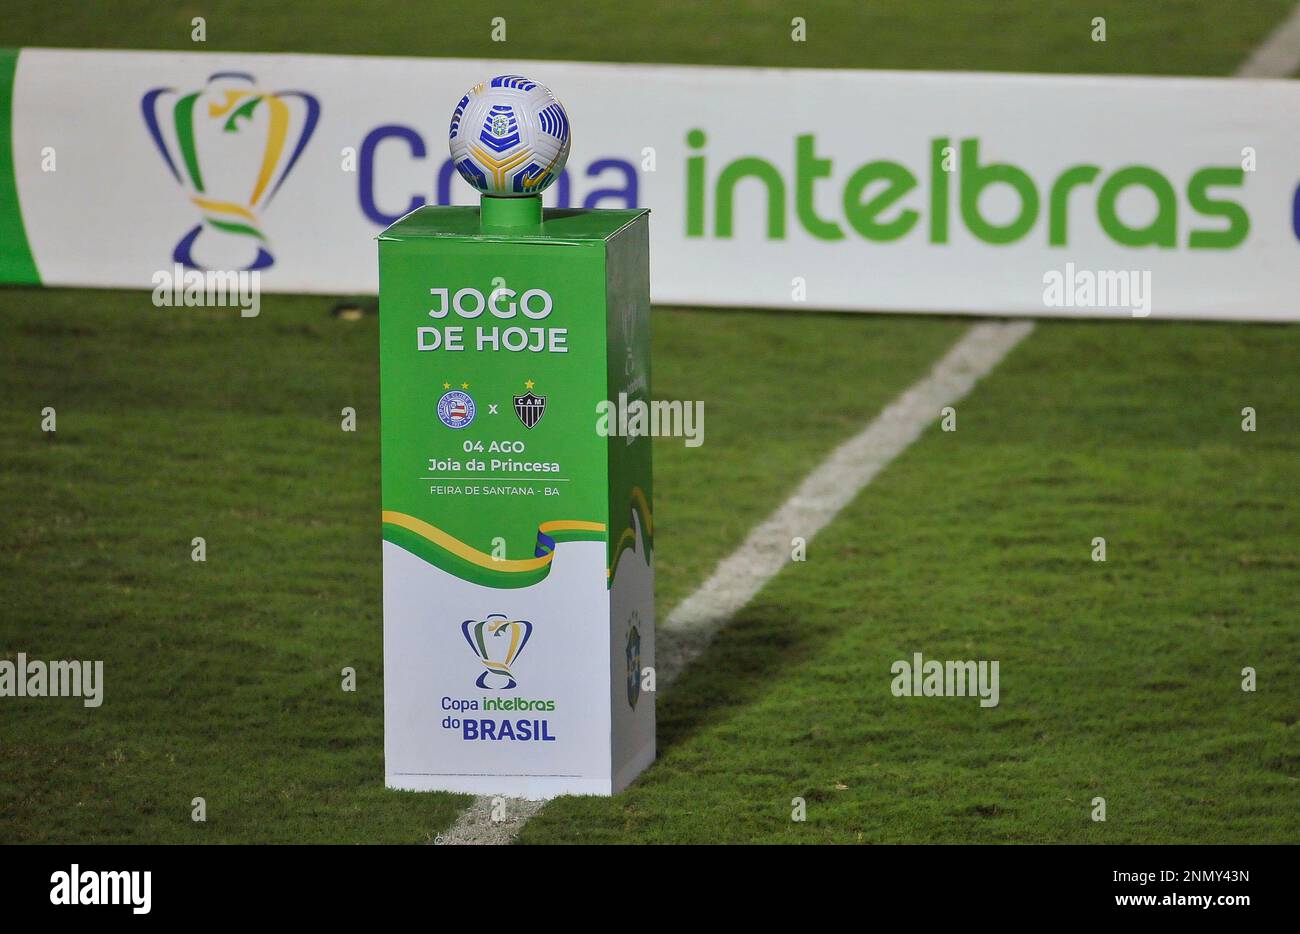 Copa do Brasil 2021